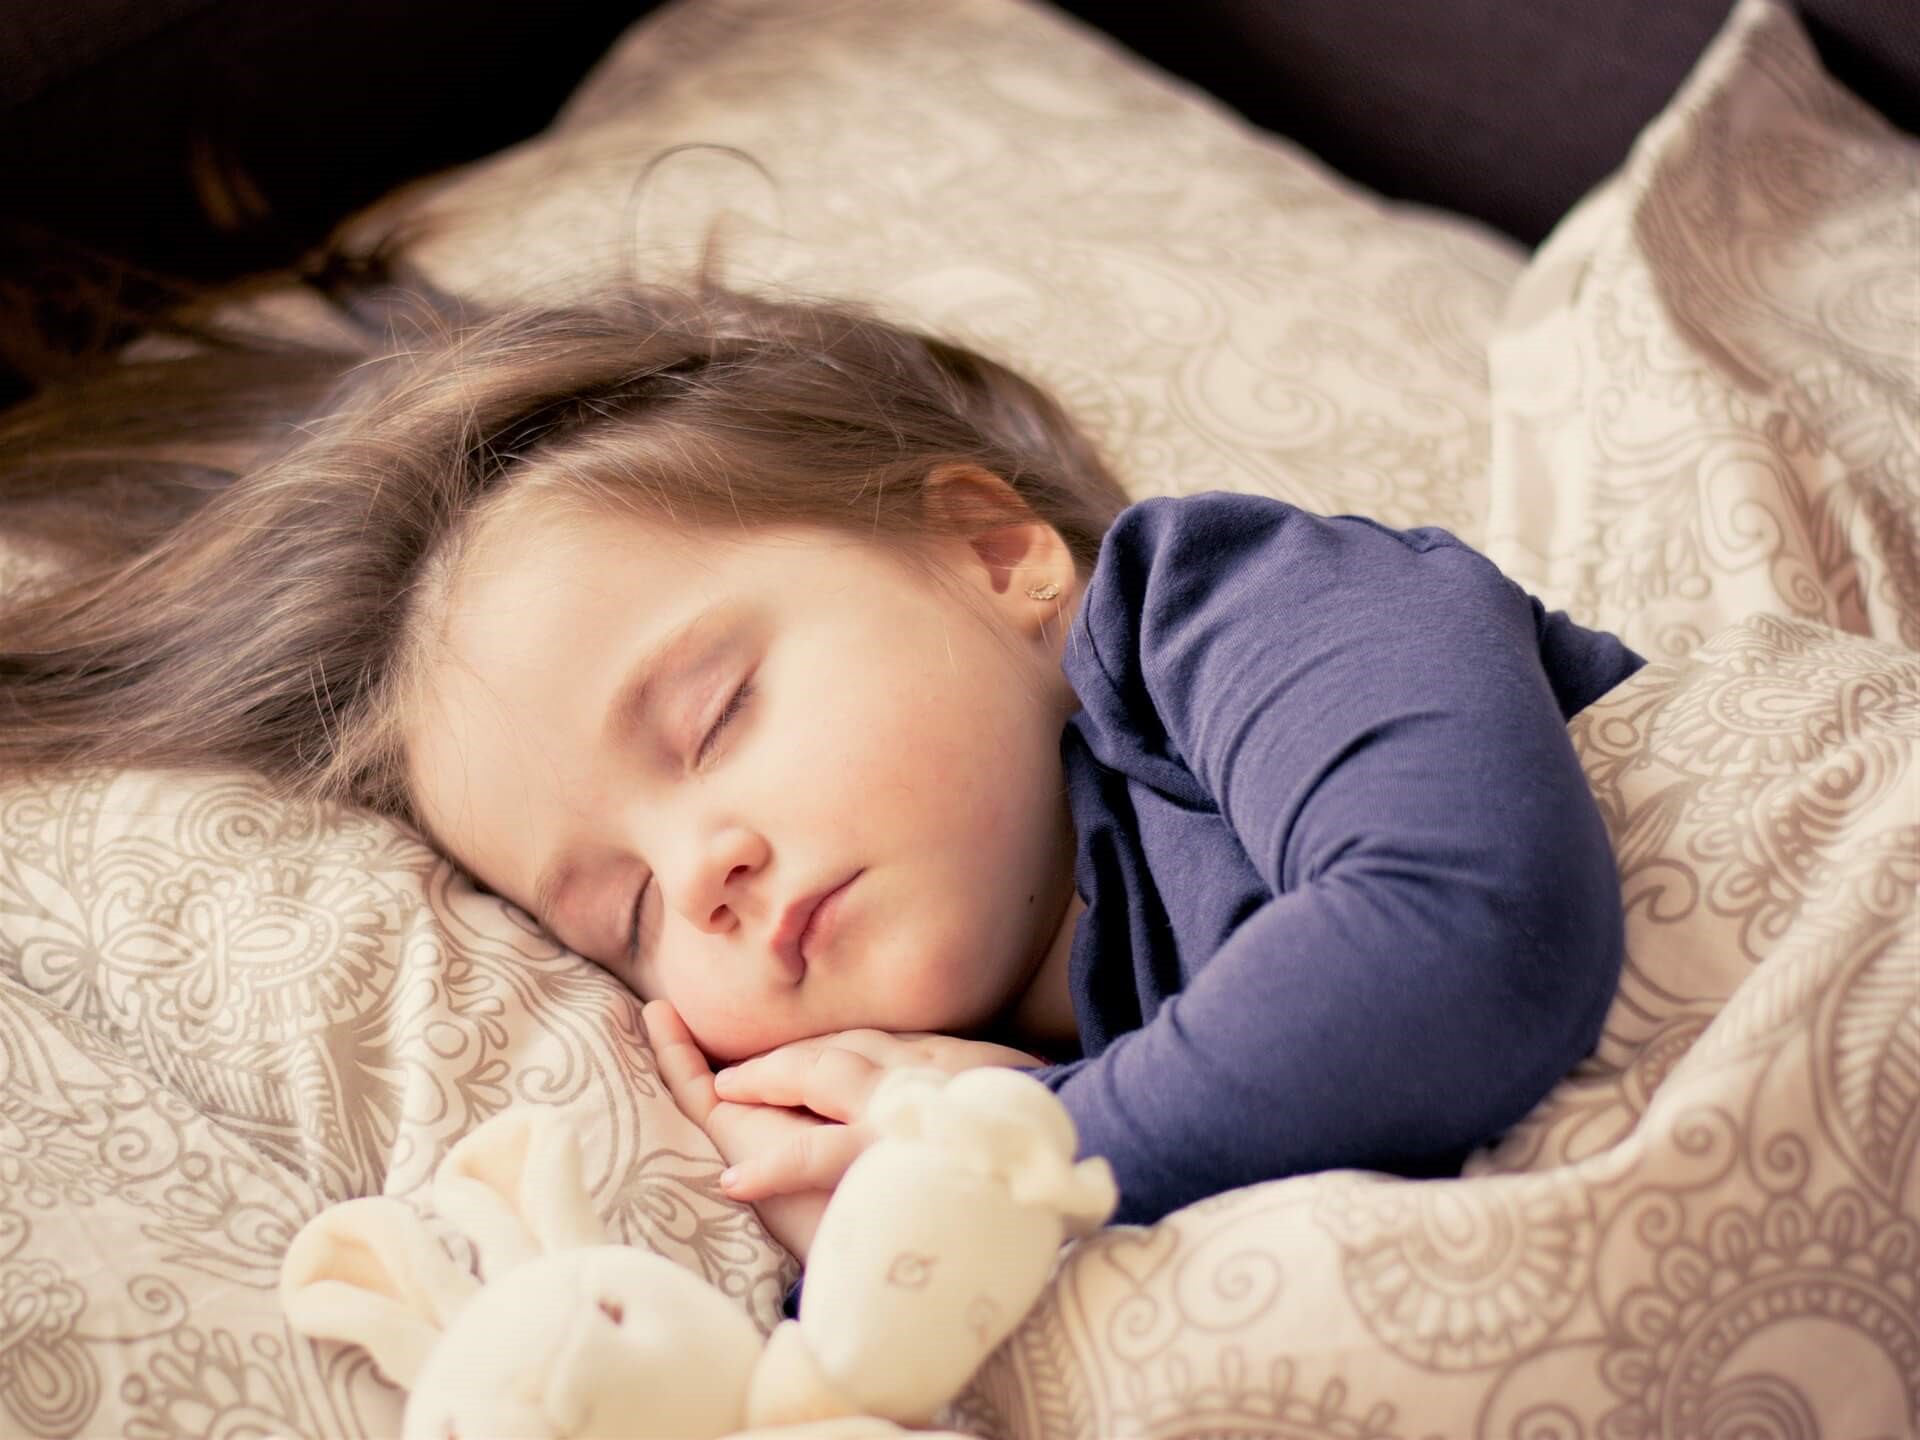 늦게 자는 아이는 더 많은 장애를 가질 수 있다